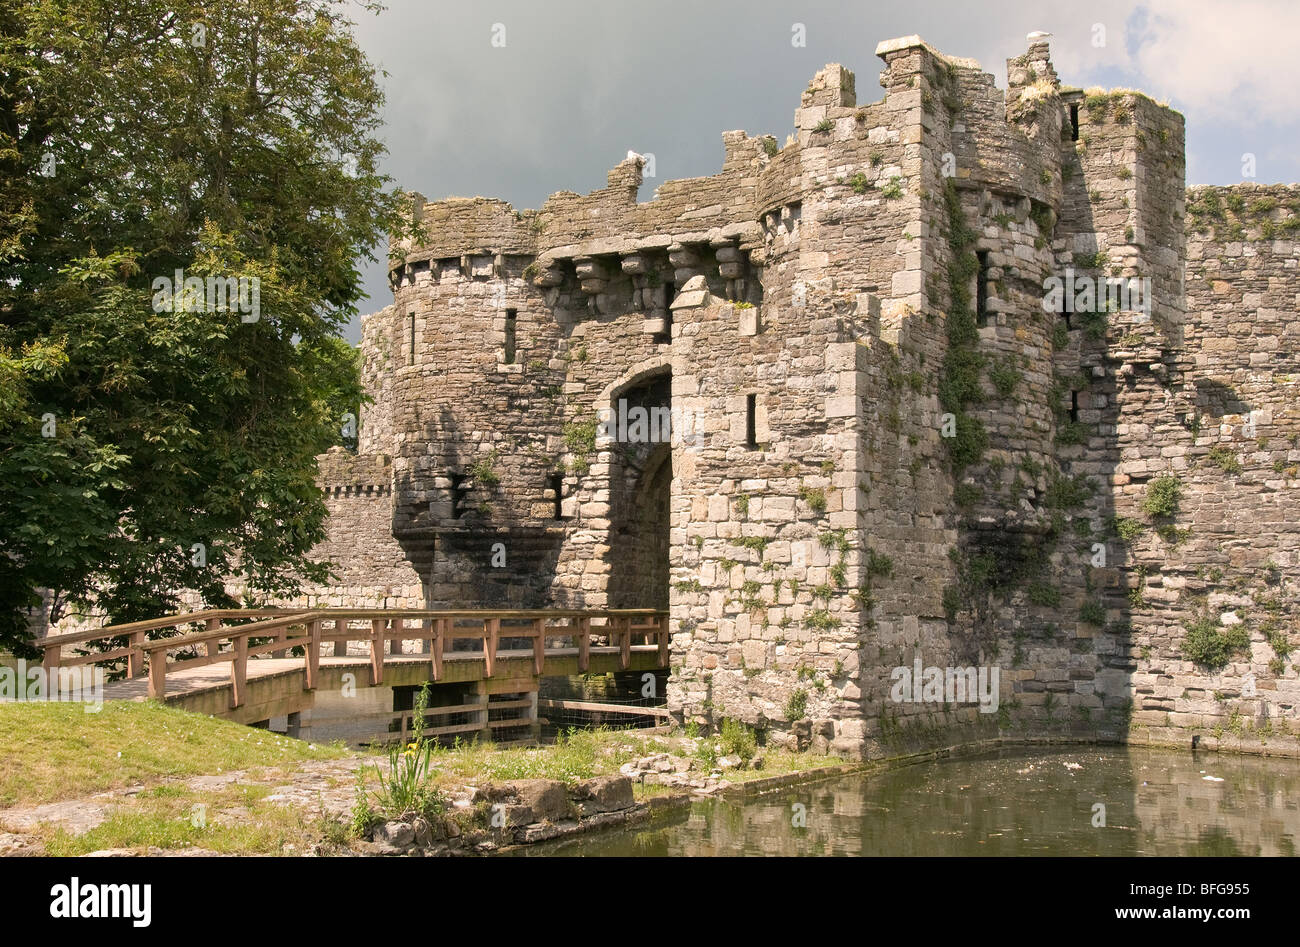 Beaumaris Castle, Welsh Heritage building, Welsh history,Castle Moat, Edwardian Castle, Wales, Stock Photo